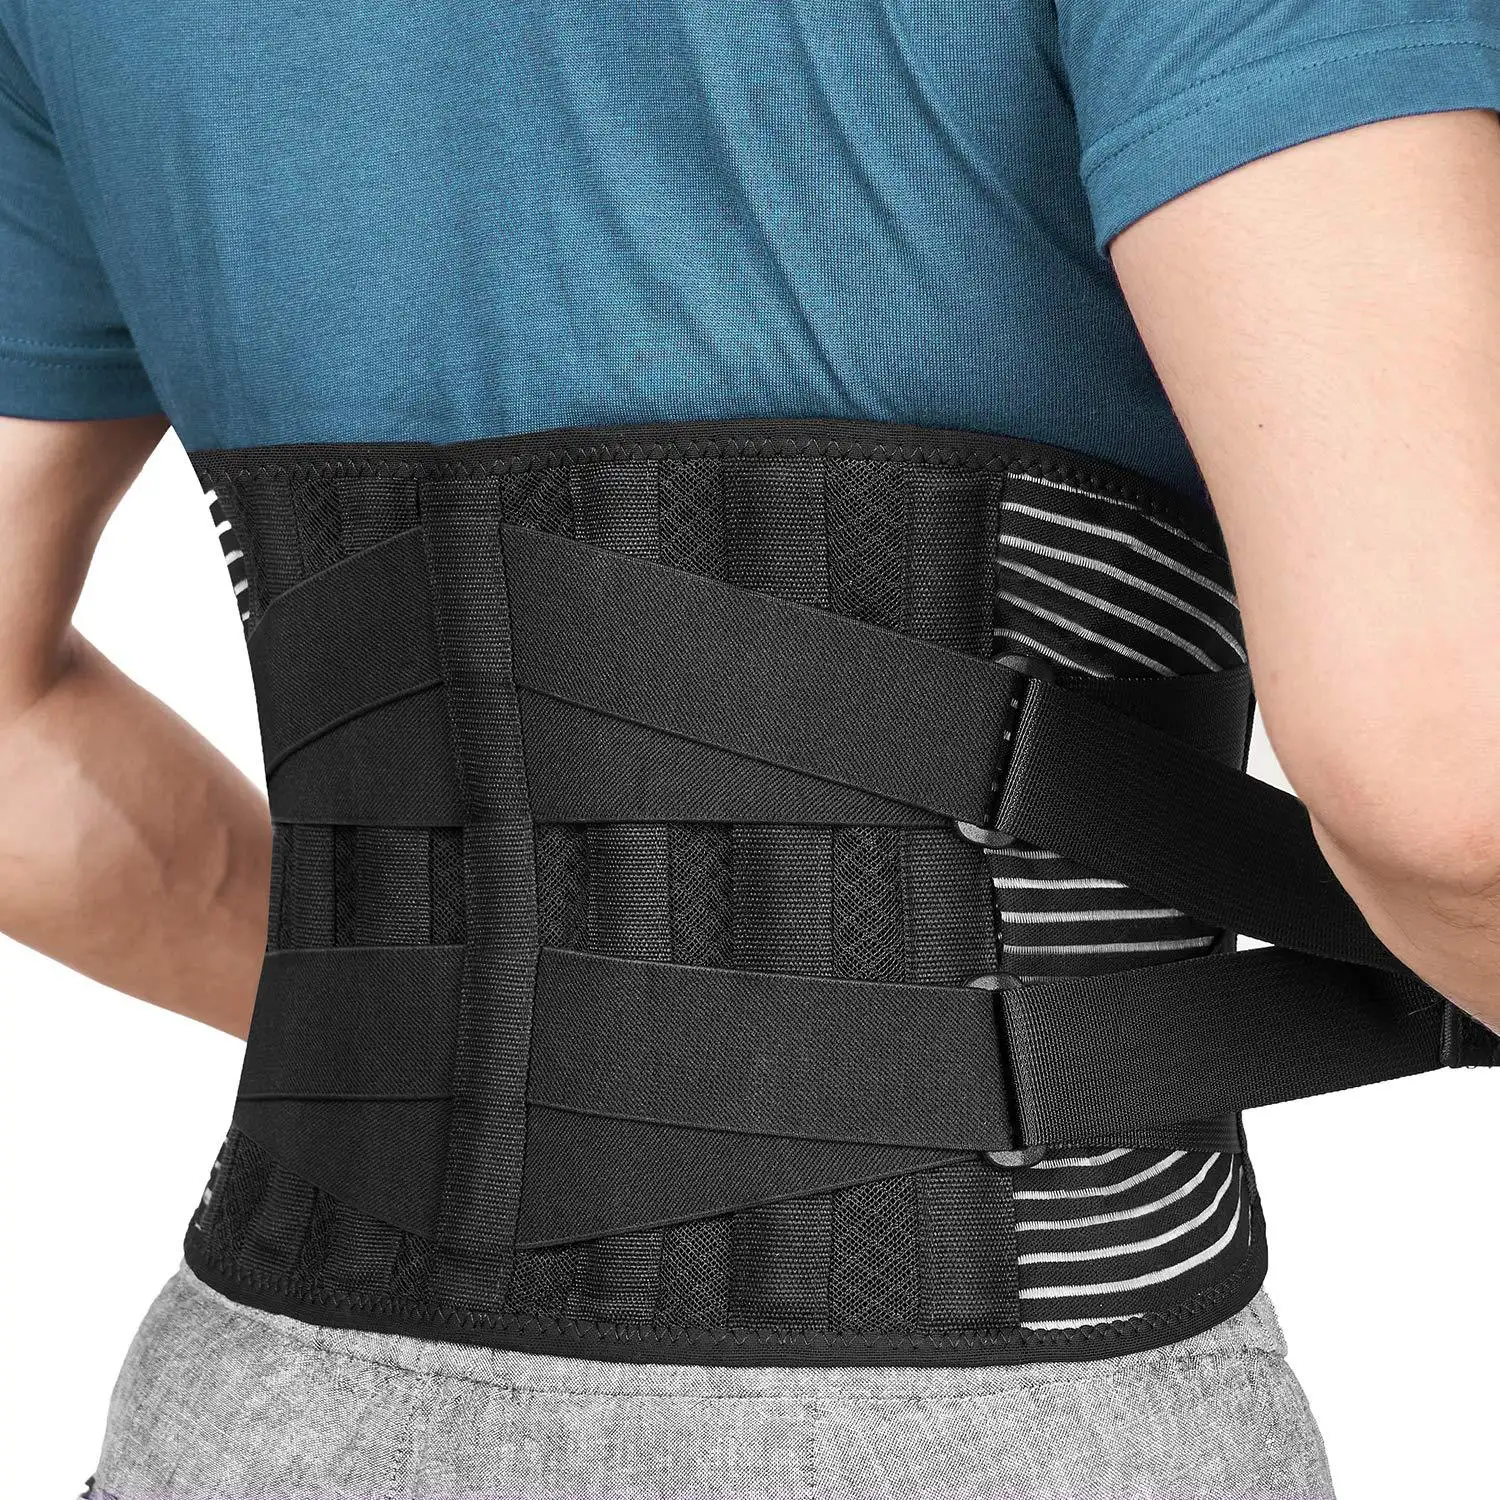 Cinta inferior da costas personalizada para alívio da dor nas costas, cinta médica de apoio lombar para homens e mulheres